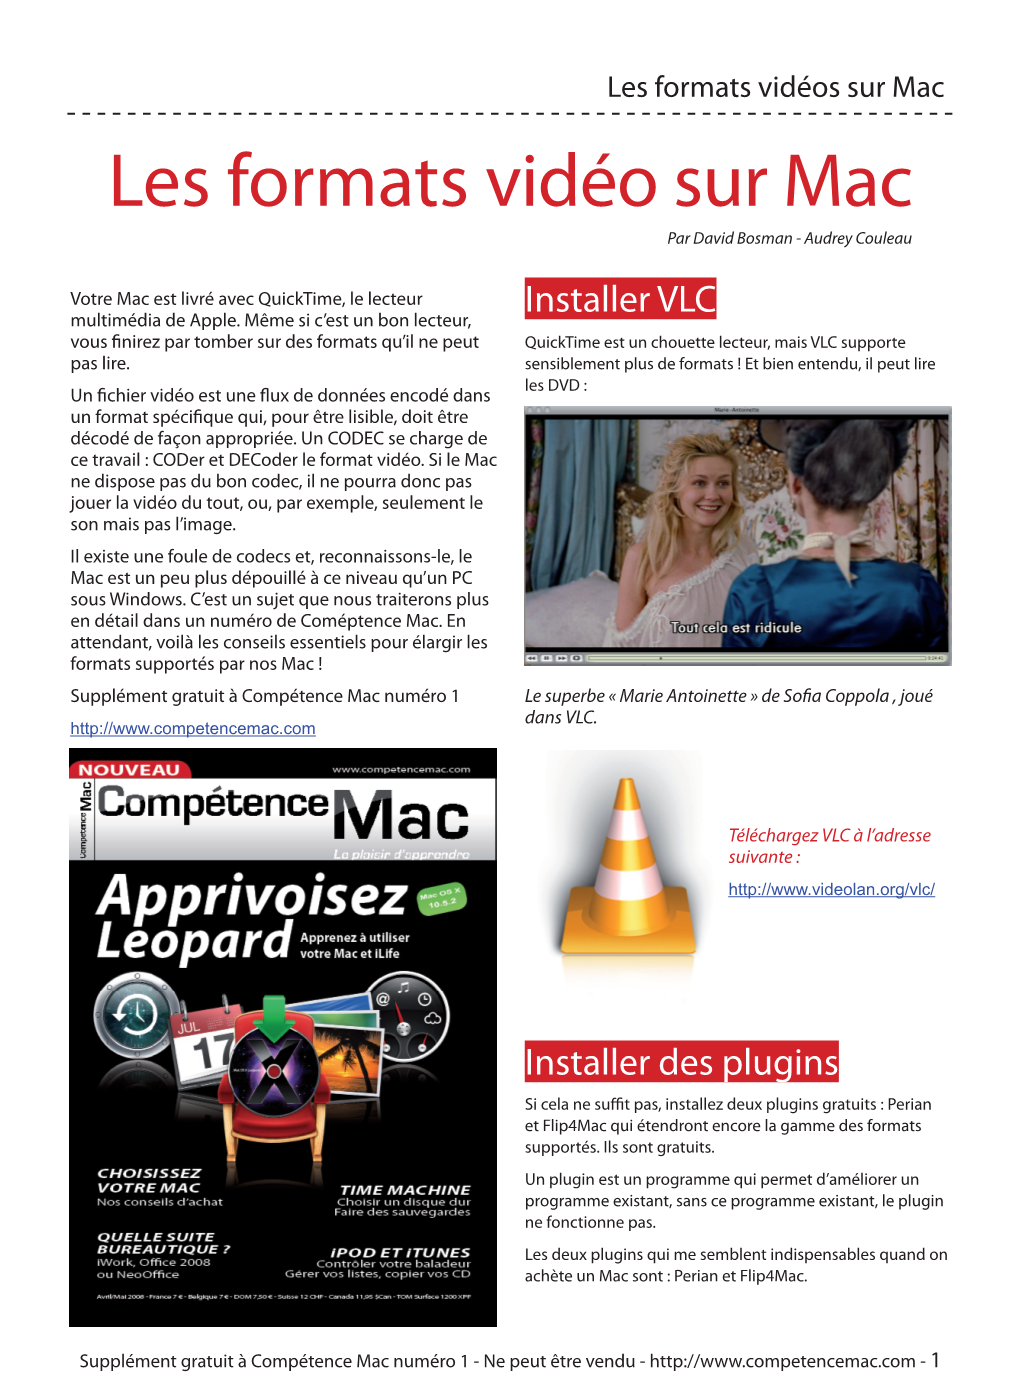 Les Formats Vidéo Sur Mac Par David Bosman - Audrey Couleau